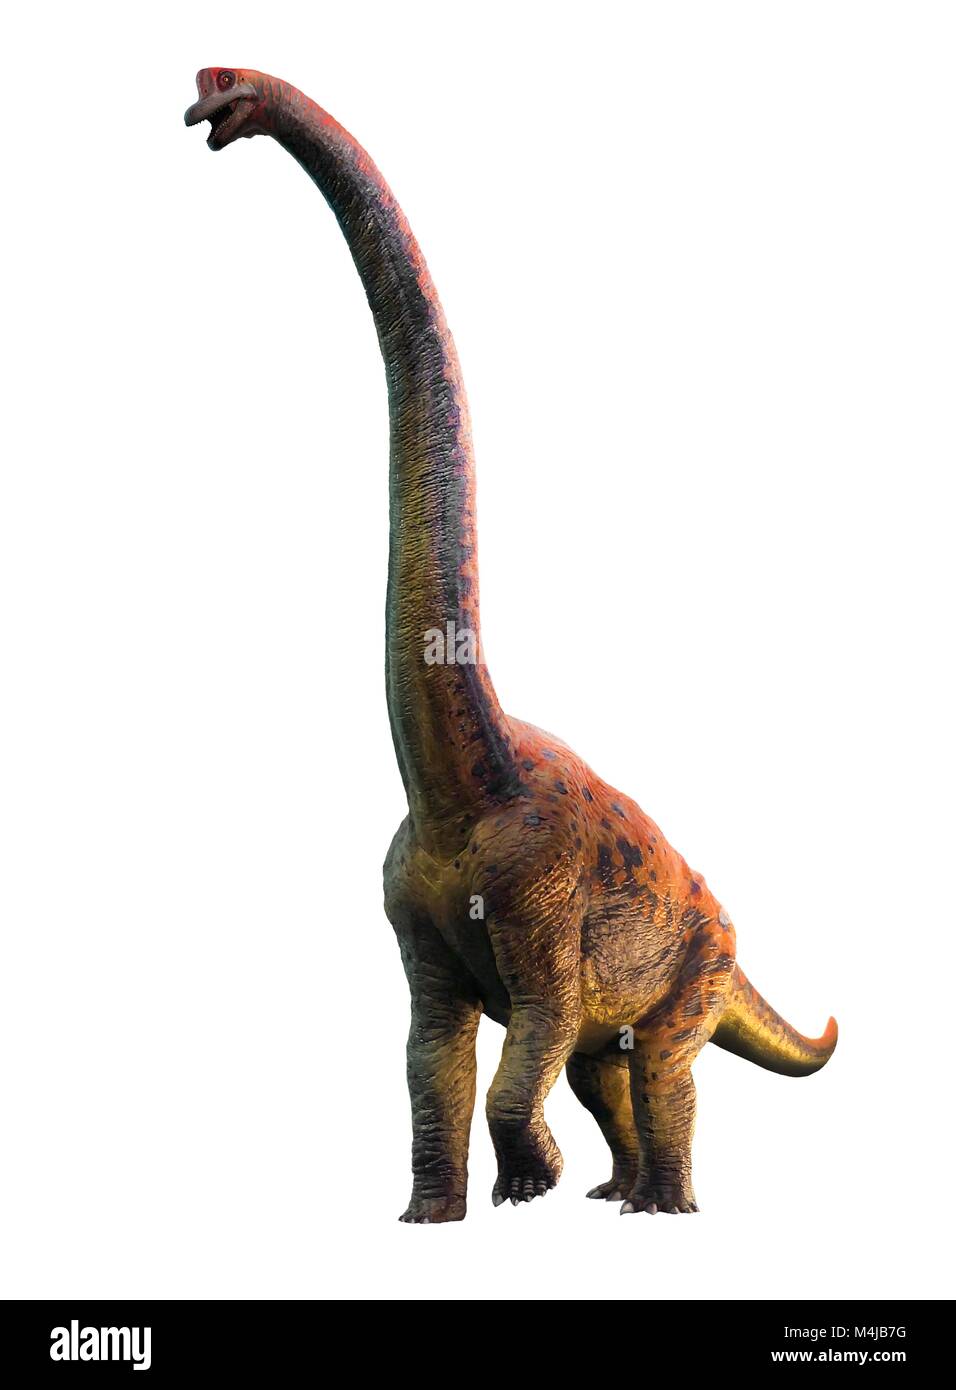 Abbildung: giraffatitan Dinosaurier. Giraffatitan vorher gedacht wurde, um eine Art der Brachiosaurus brancai zu (B.) ist jetzt aber gedacht, um eine eigene Gattung zu gehören. Diese Tiere wurden sauropods, vierbeinige, Pflanzen fressenden Dinosaurier aus der Kreidezeit. Sie erreicht eine Länge von etwa 26 Metern und bis zu 40 Tonnen wog. Die Skelette von Brachiosaurus und Giraffatitan, obwohl aus verschiedenen Kontinenten (Amerika und Afrika) fast für das ungeschulte Auge sehen identisch aus, also dieses Bild darstellen könnte entweder Tier. Stockfoto